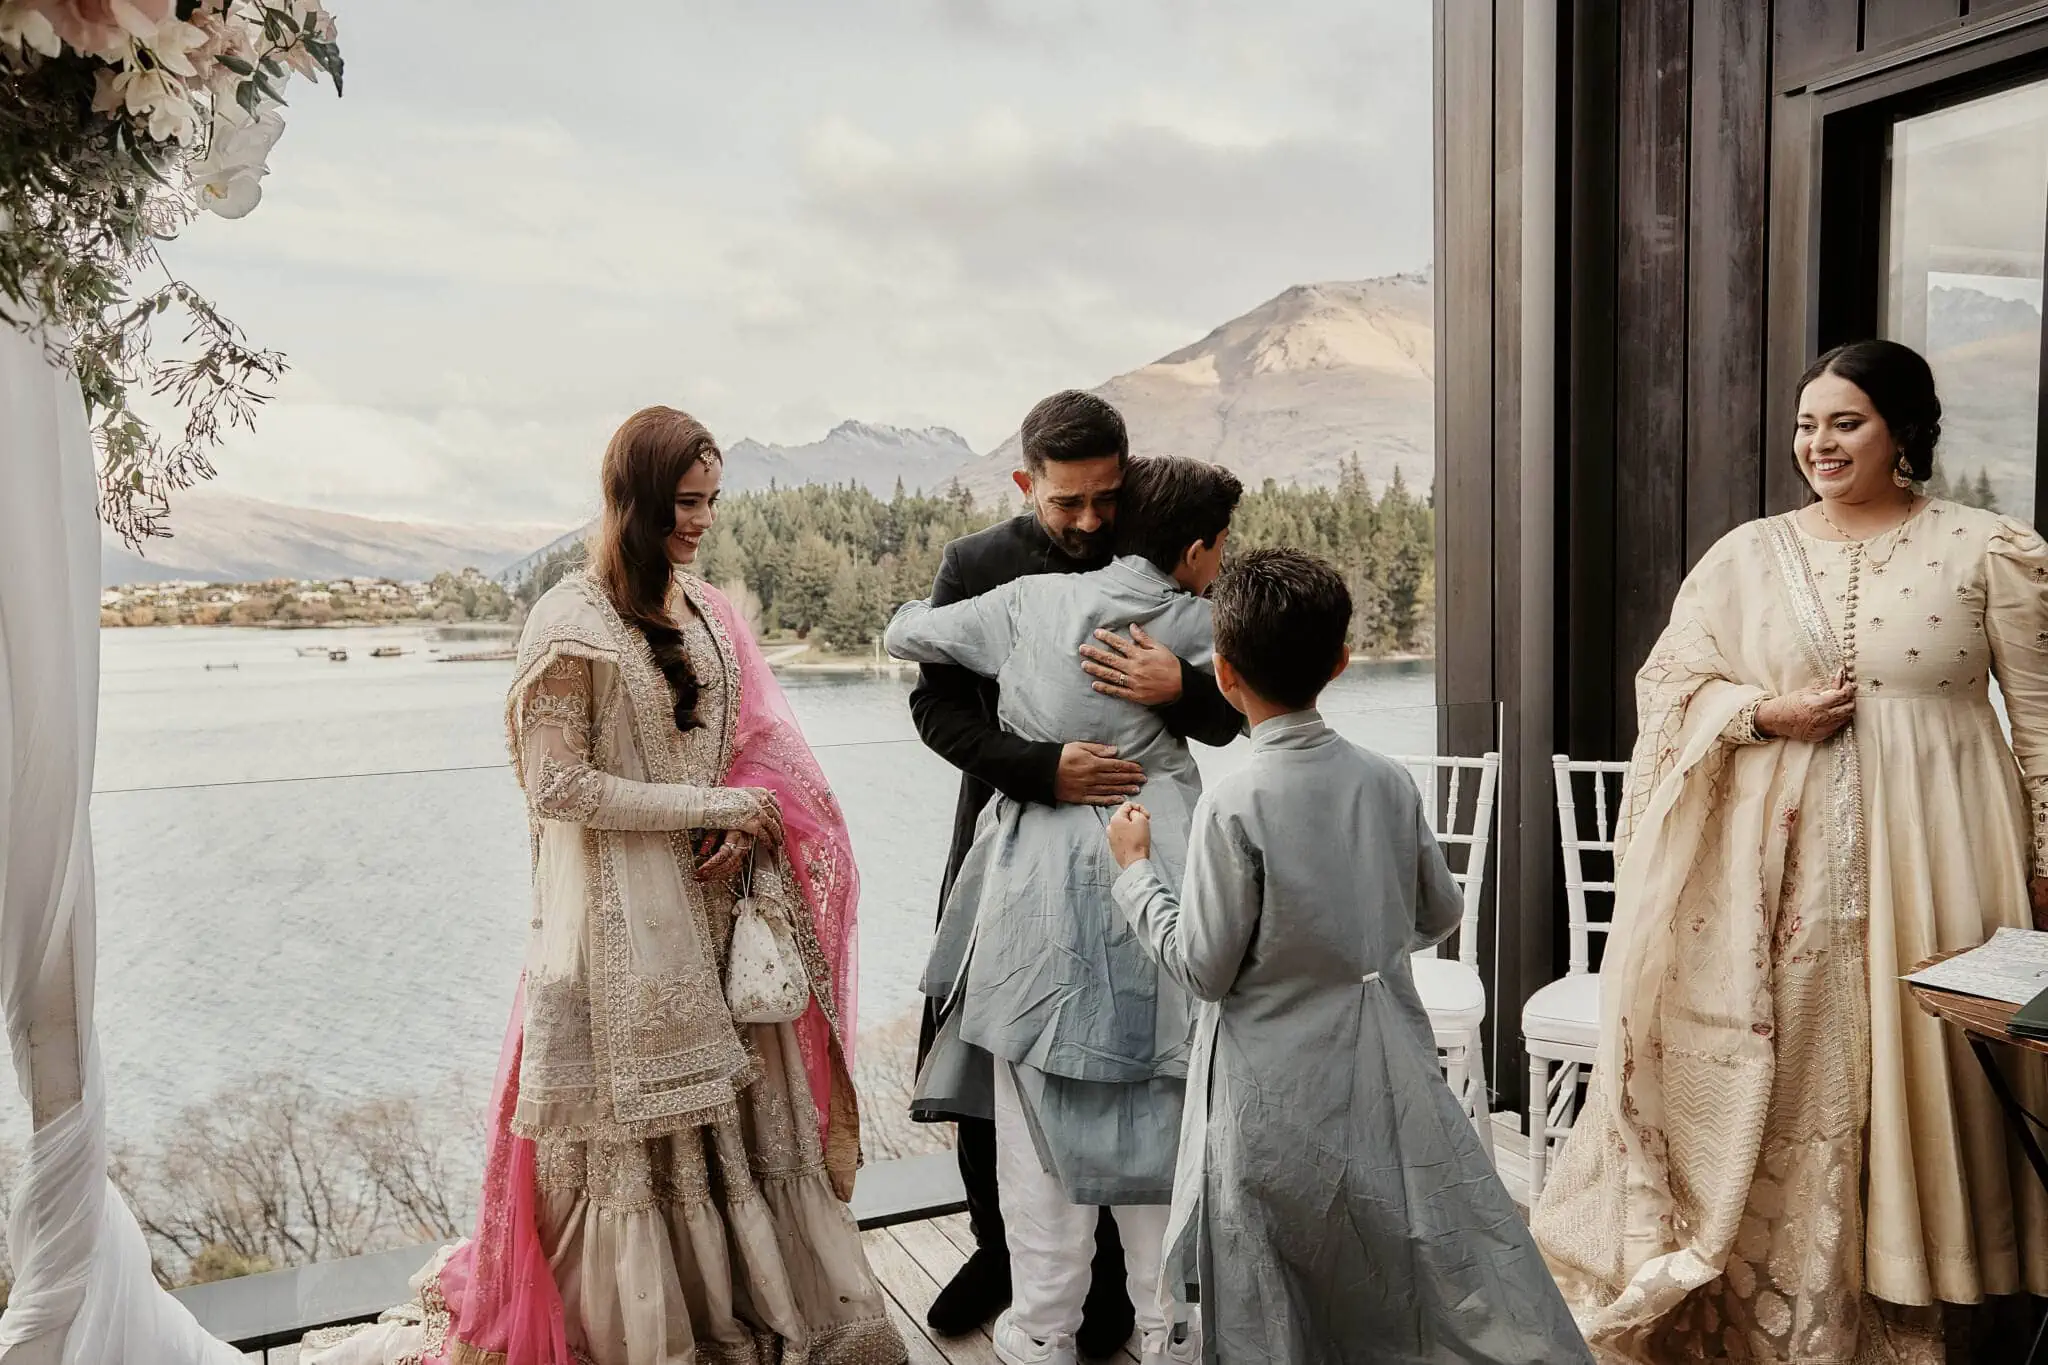 Queenstown New Zealand Elopement Wedding Photographer - Wasim and Yumn embrace joyfully at their Queenstown Islamic wedding ceremony in New Zealand.